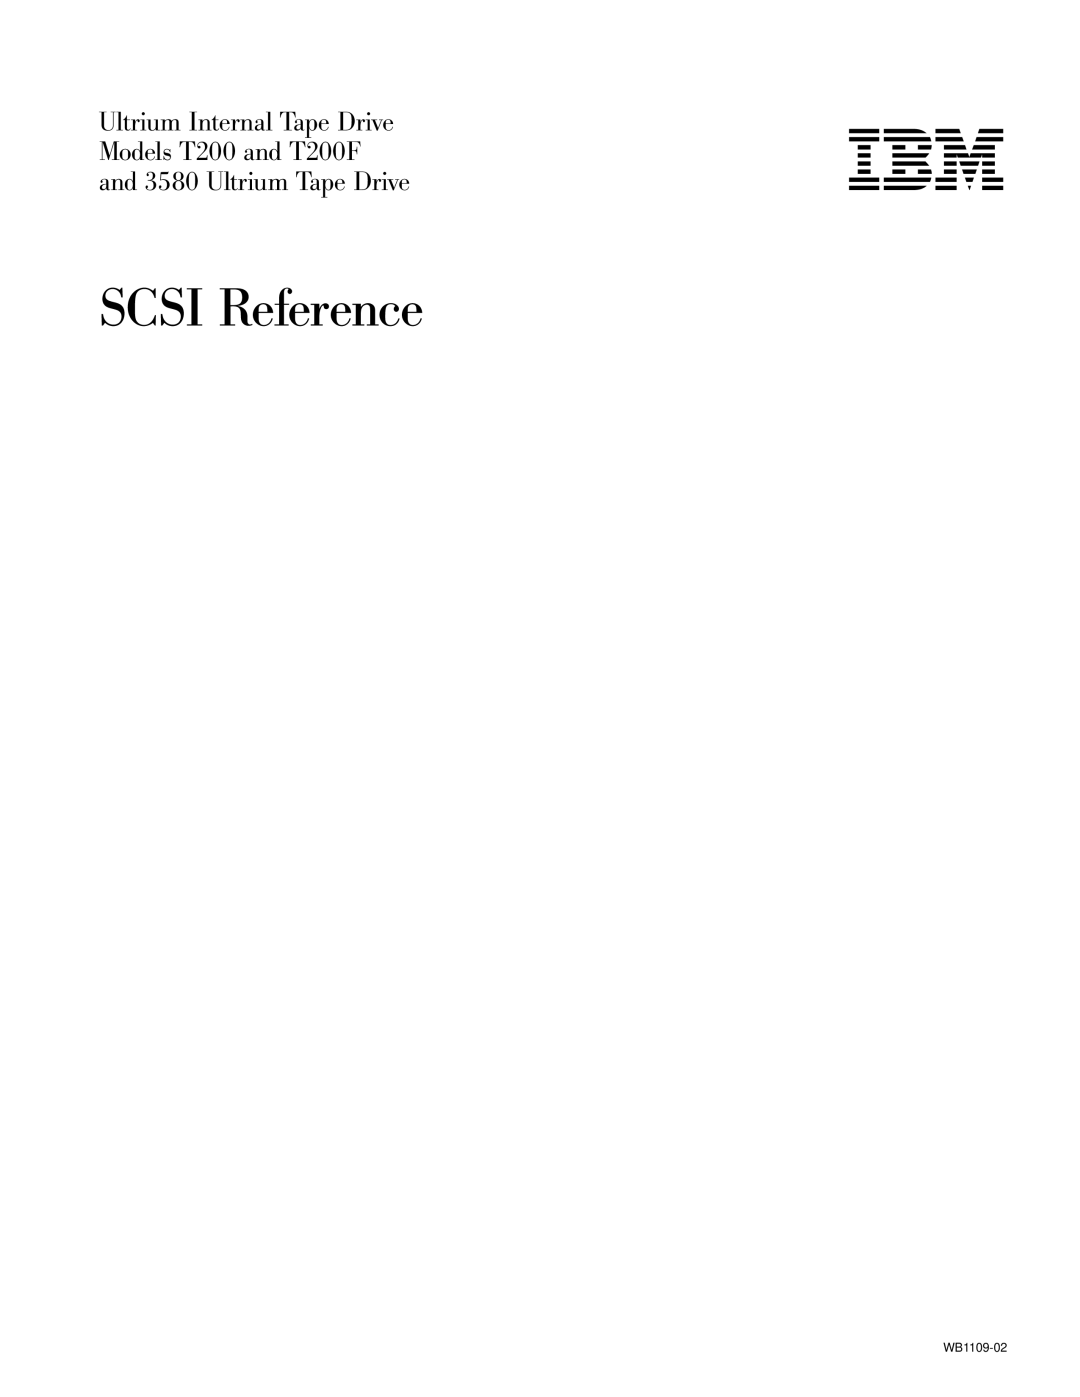 IBM T200F manual Scsi Reference 